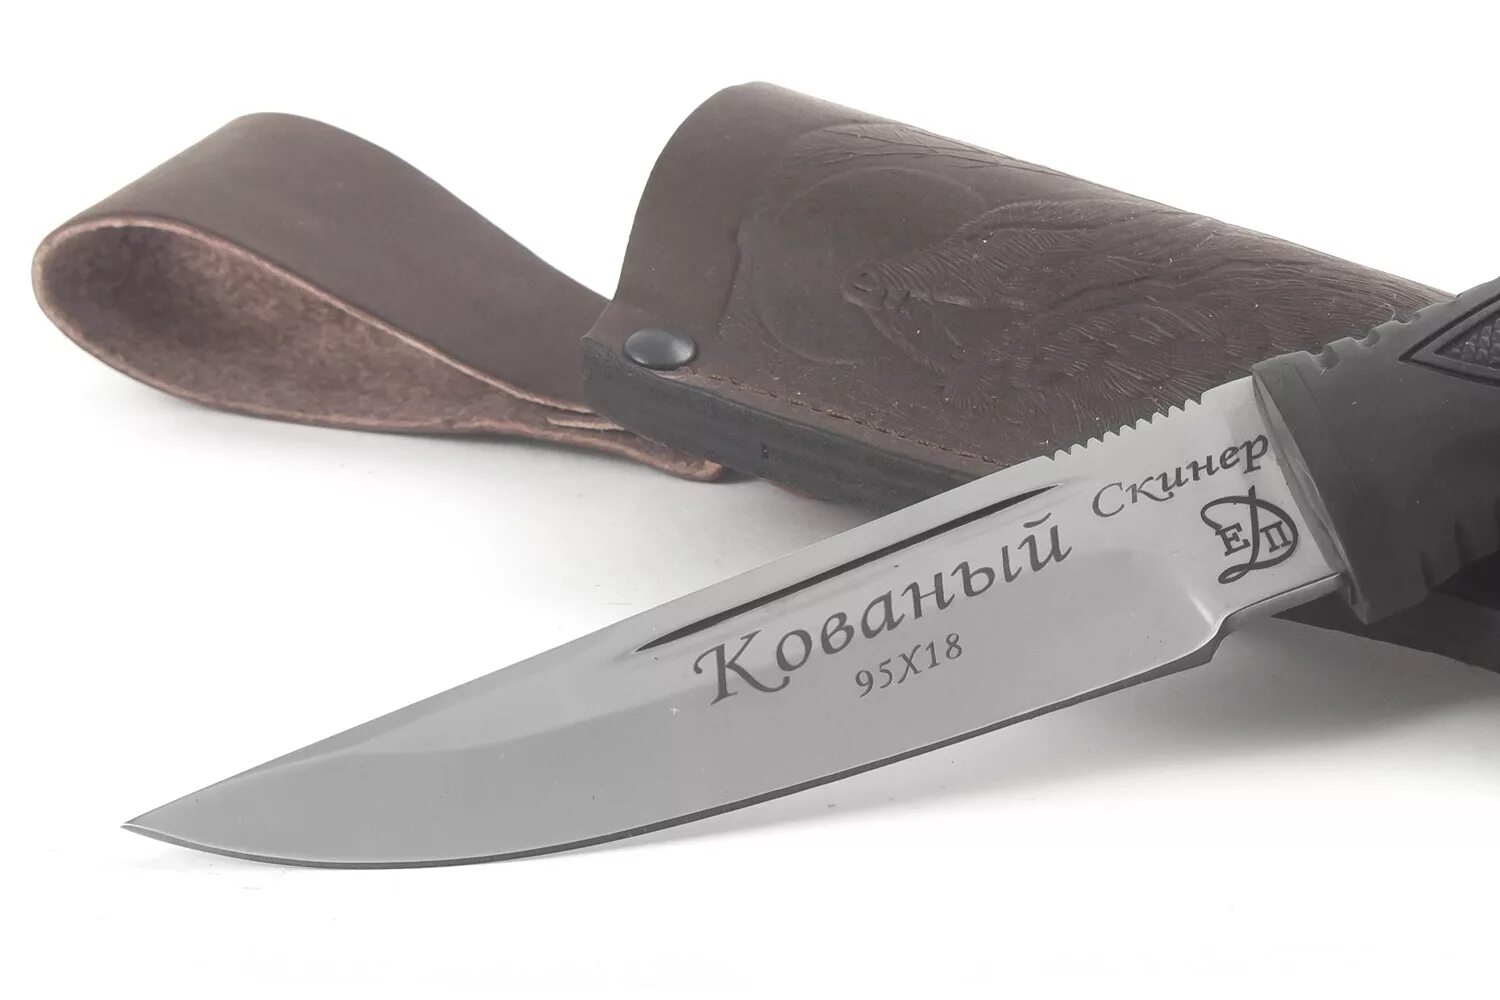 Купите клинок из стали. Сталь ножевая в038. Нож Ch 3533 сталь. Нож складной МЕДТЕХ сталь 95х18. Сталь ножа 011а.